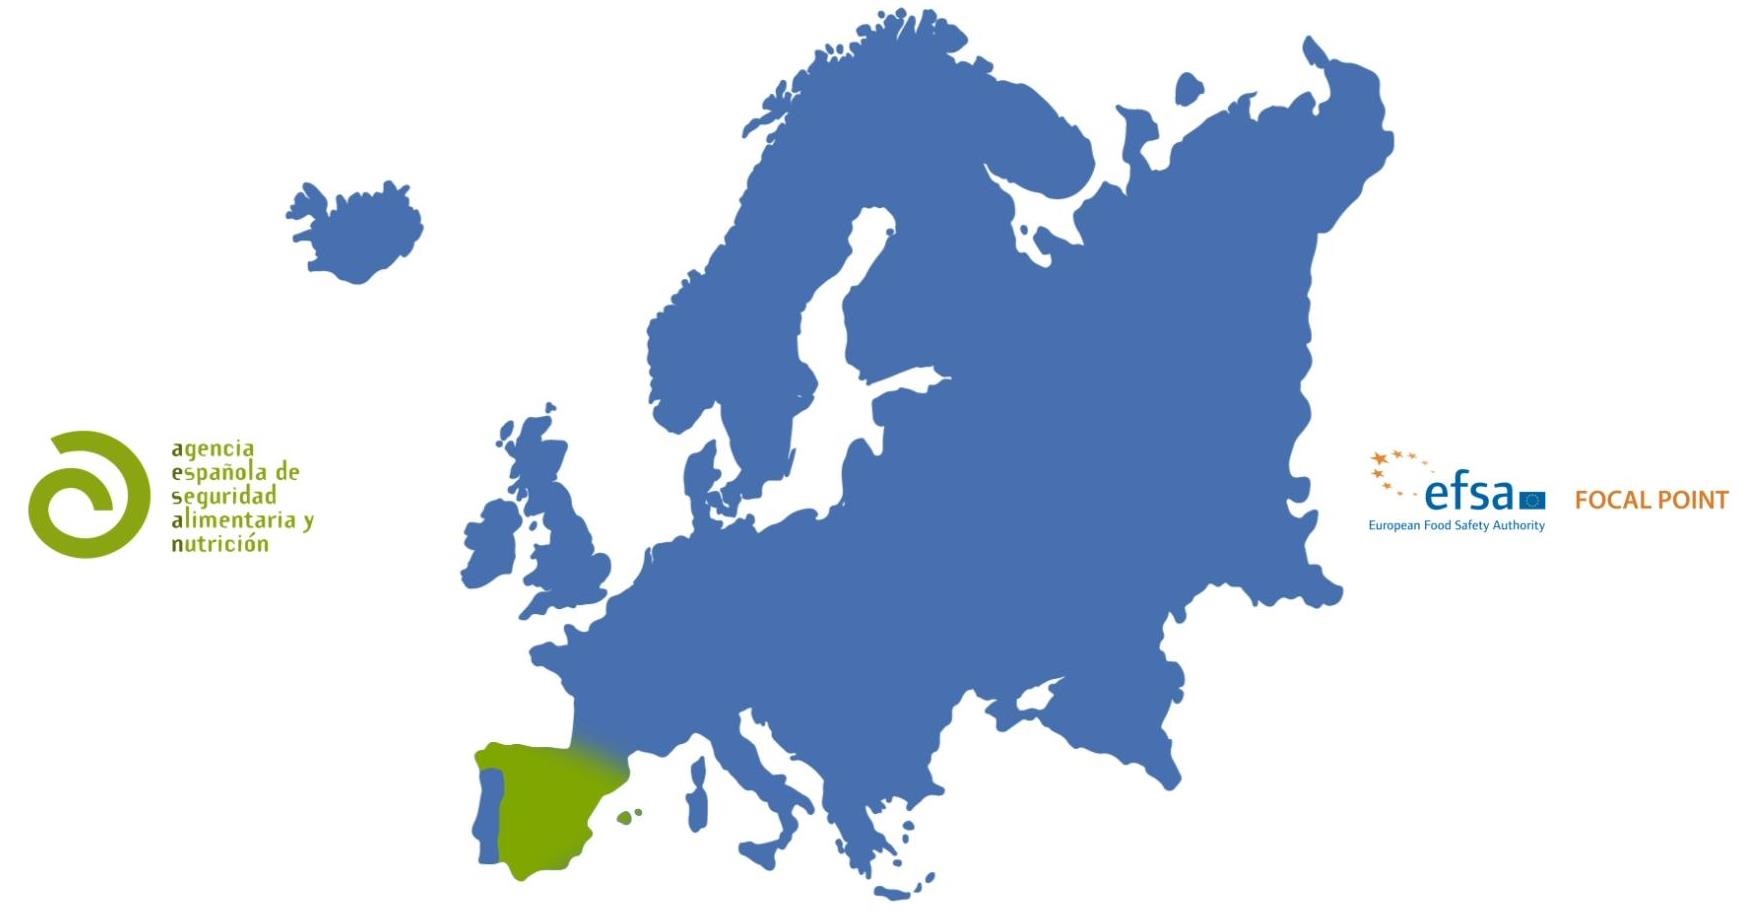 La AESAN como punto focal de EFSA en España. Video informativo 